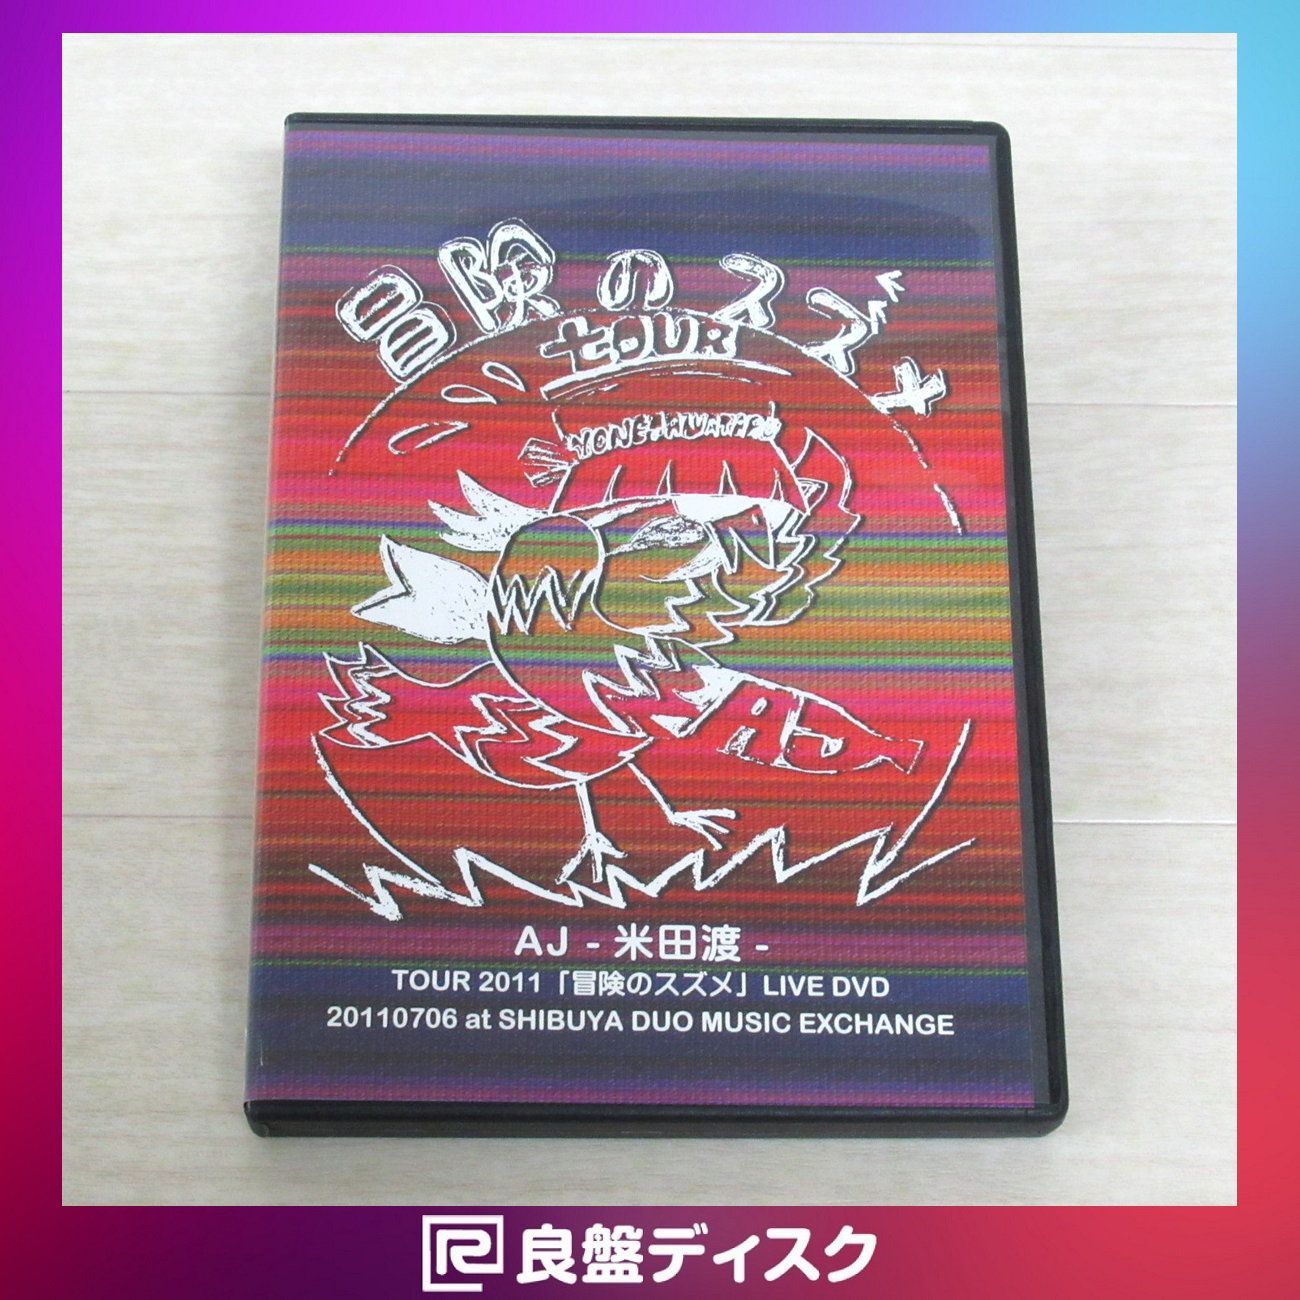 田口智治AJ-米田渡- TOUR2011「冒険のスズメ」LIVE DVD